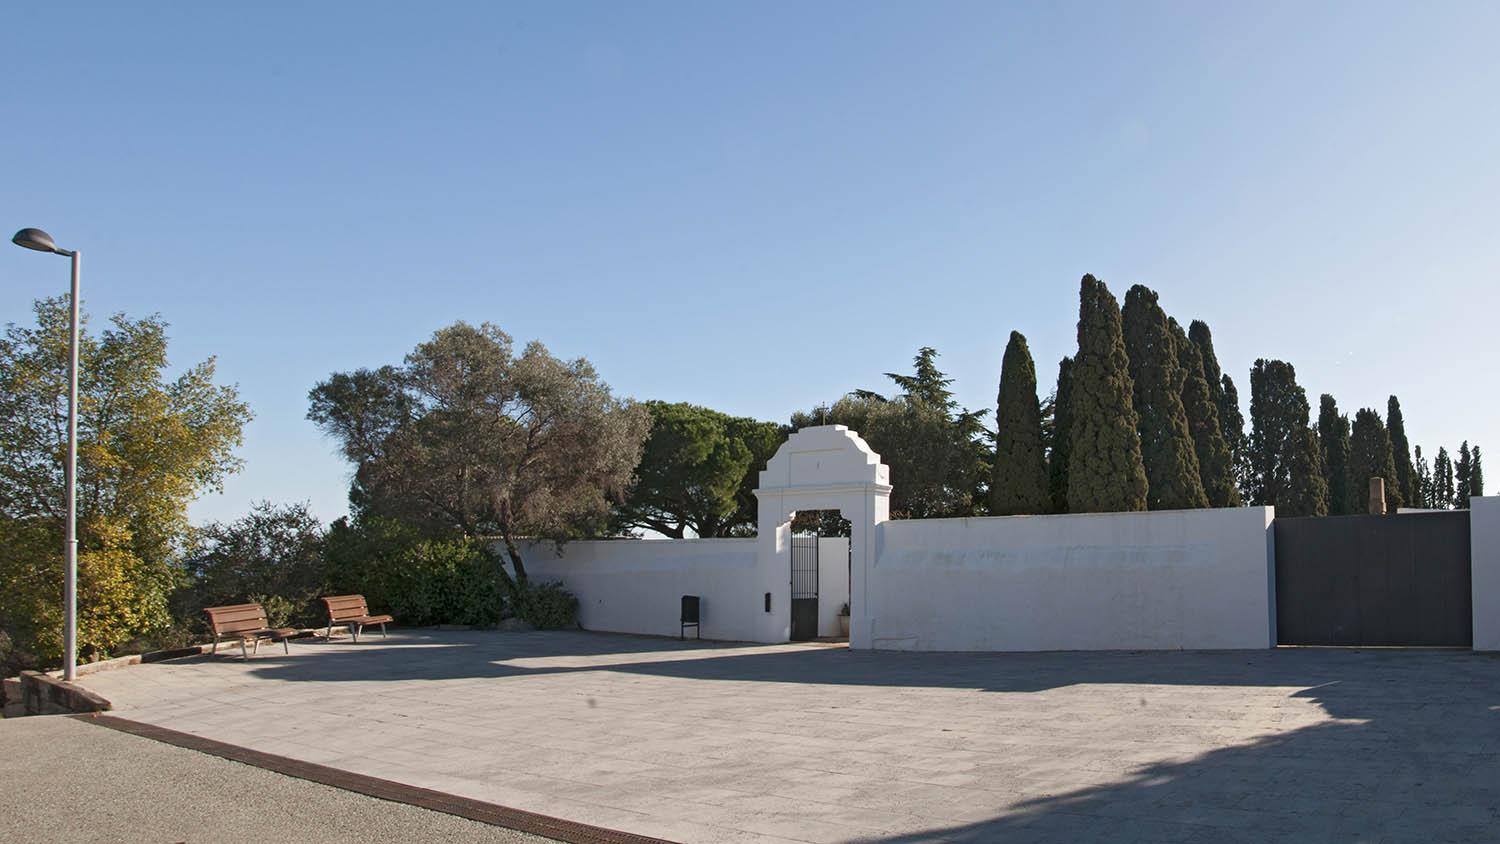 Vista de la puerta de entrada al cementerio desde la carretera que va de Sant Vicenç de Montalt a Caldes d’Estrac.